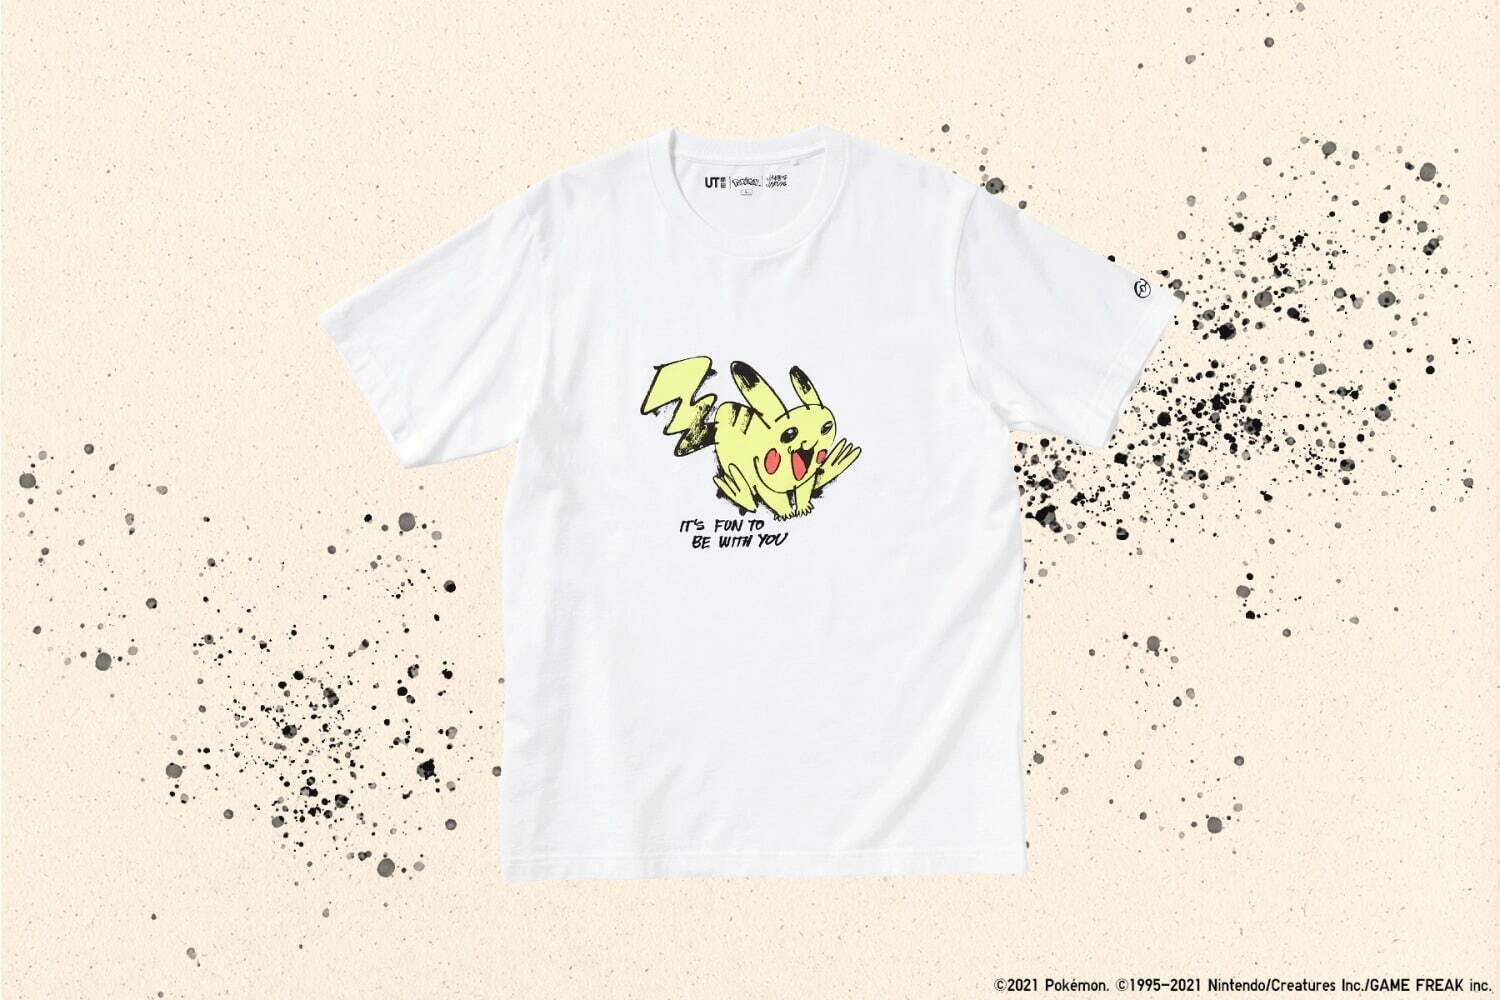 ユニクロ Ut 戦うピカチュウ や 笑顔のカビゴン を描くtシャツ 現代アーティストとコラボ ファッションプレス